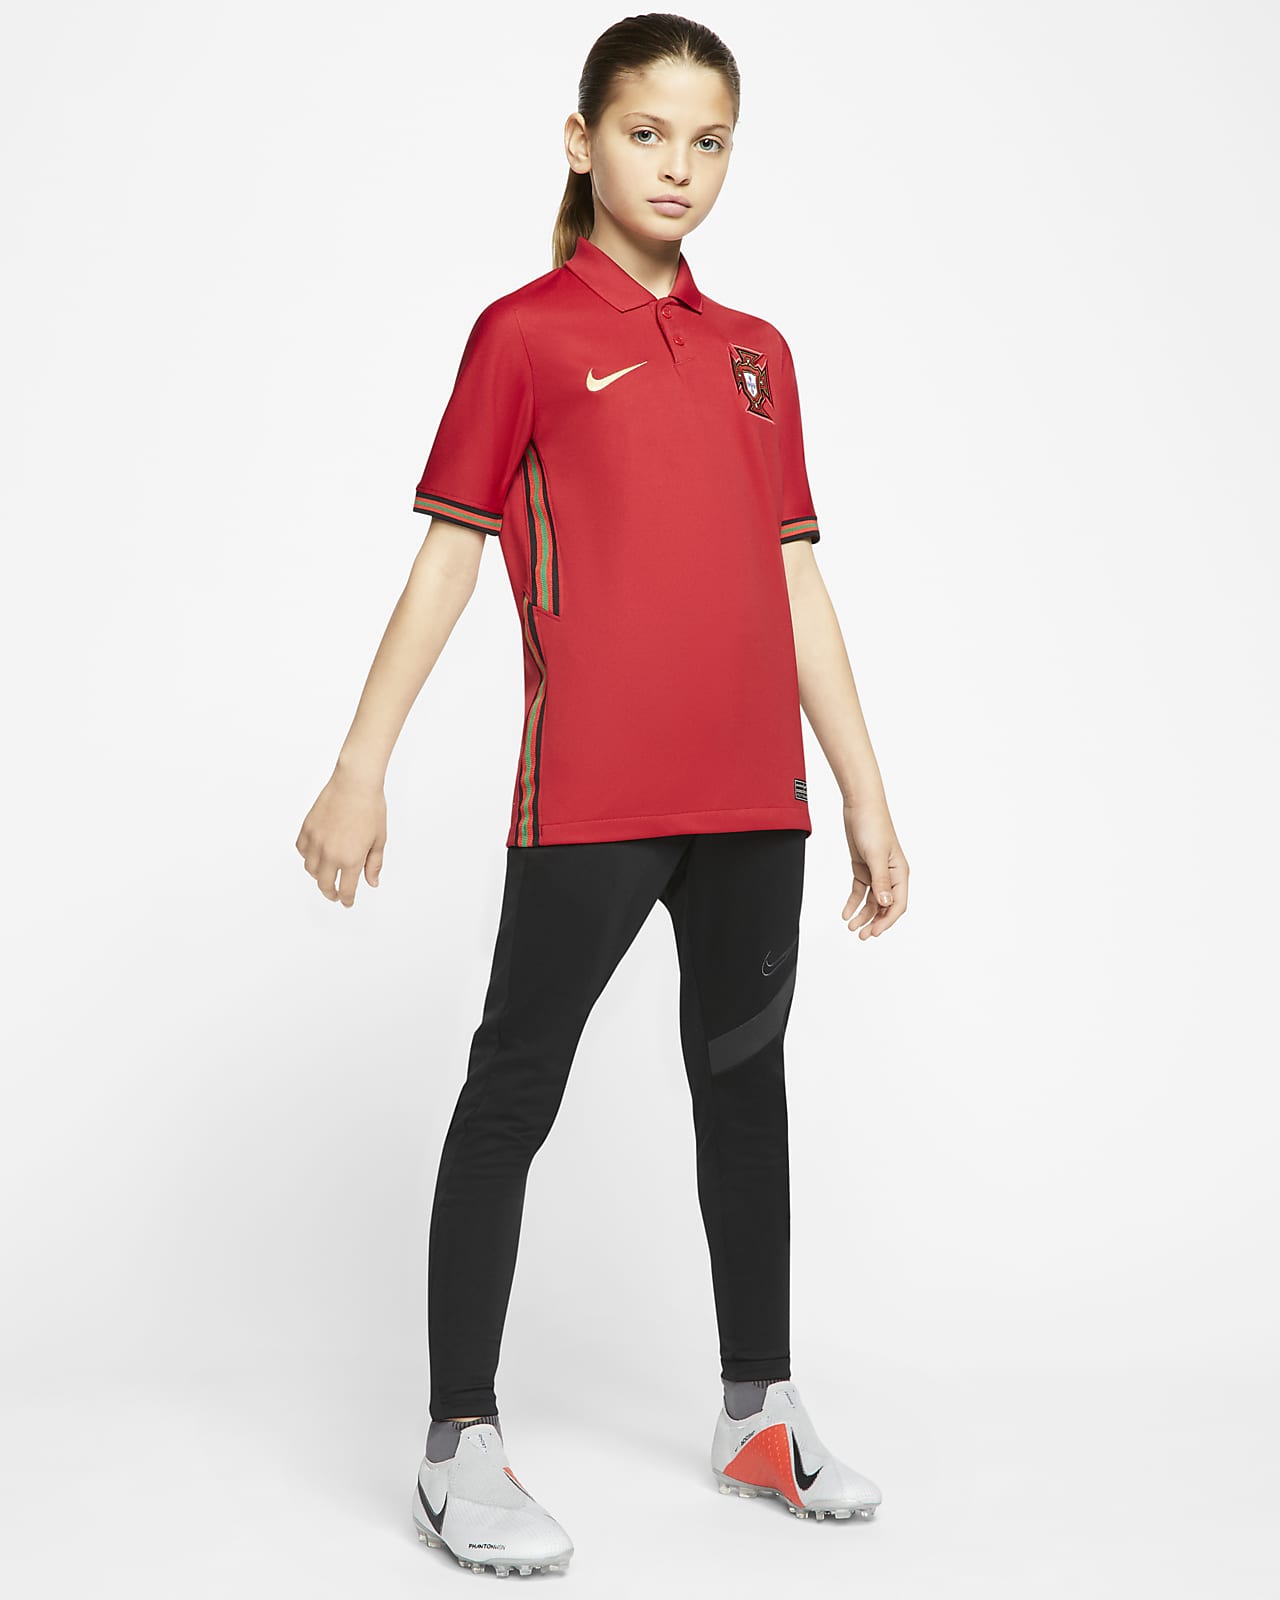 Nike公式 ポルトガル スタジアム ホーム ジュニア サッカーユニフォーム オンラインストア 通販サイト